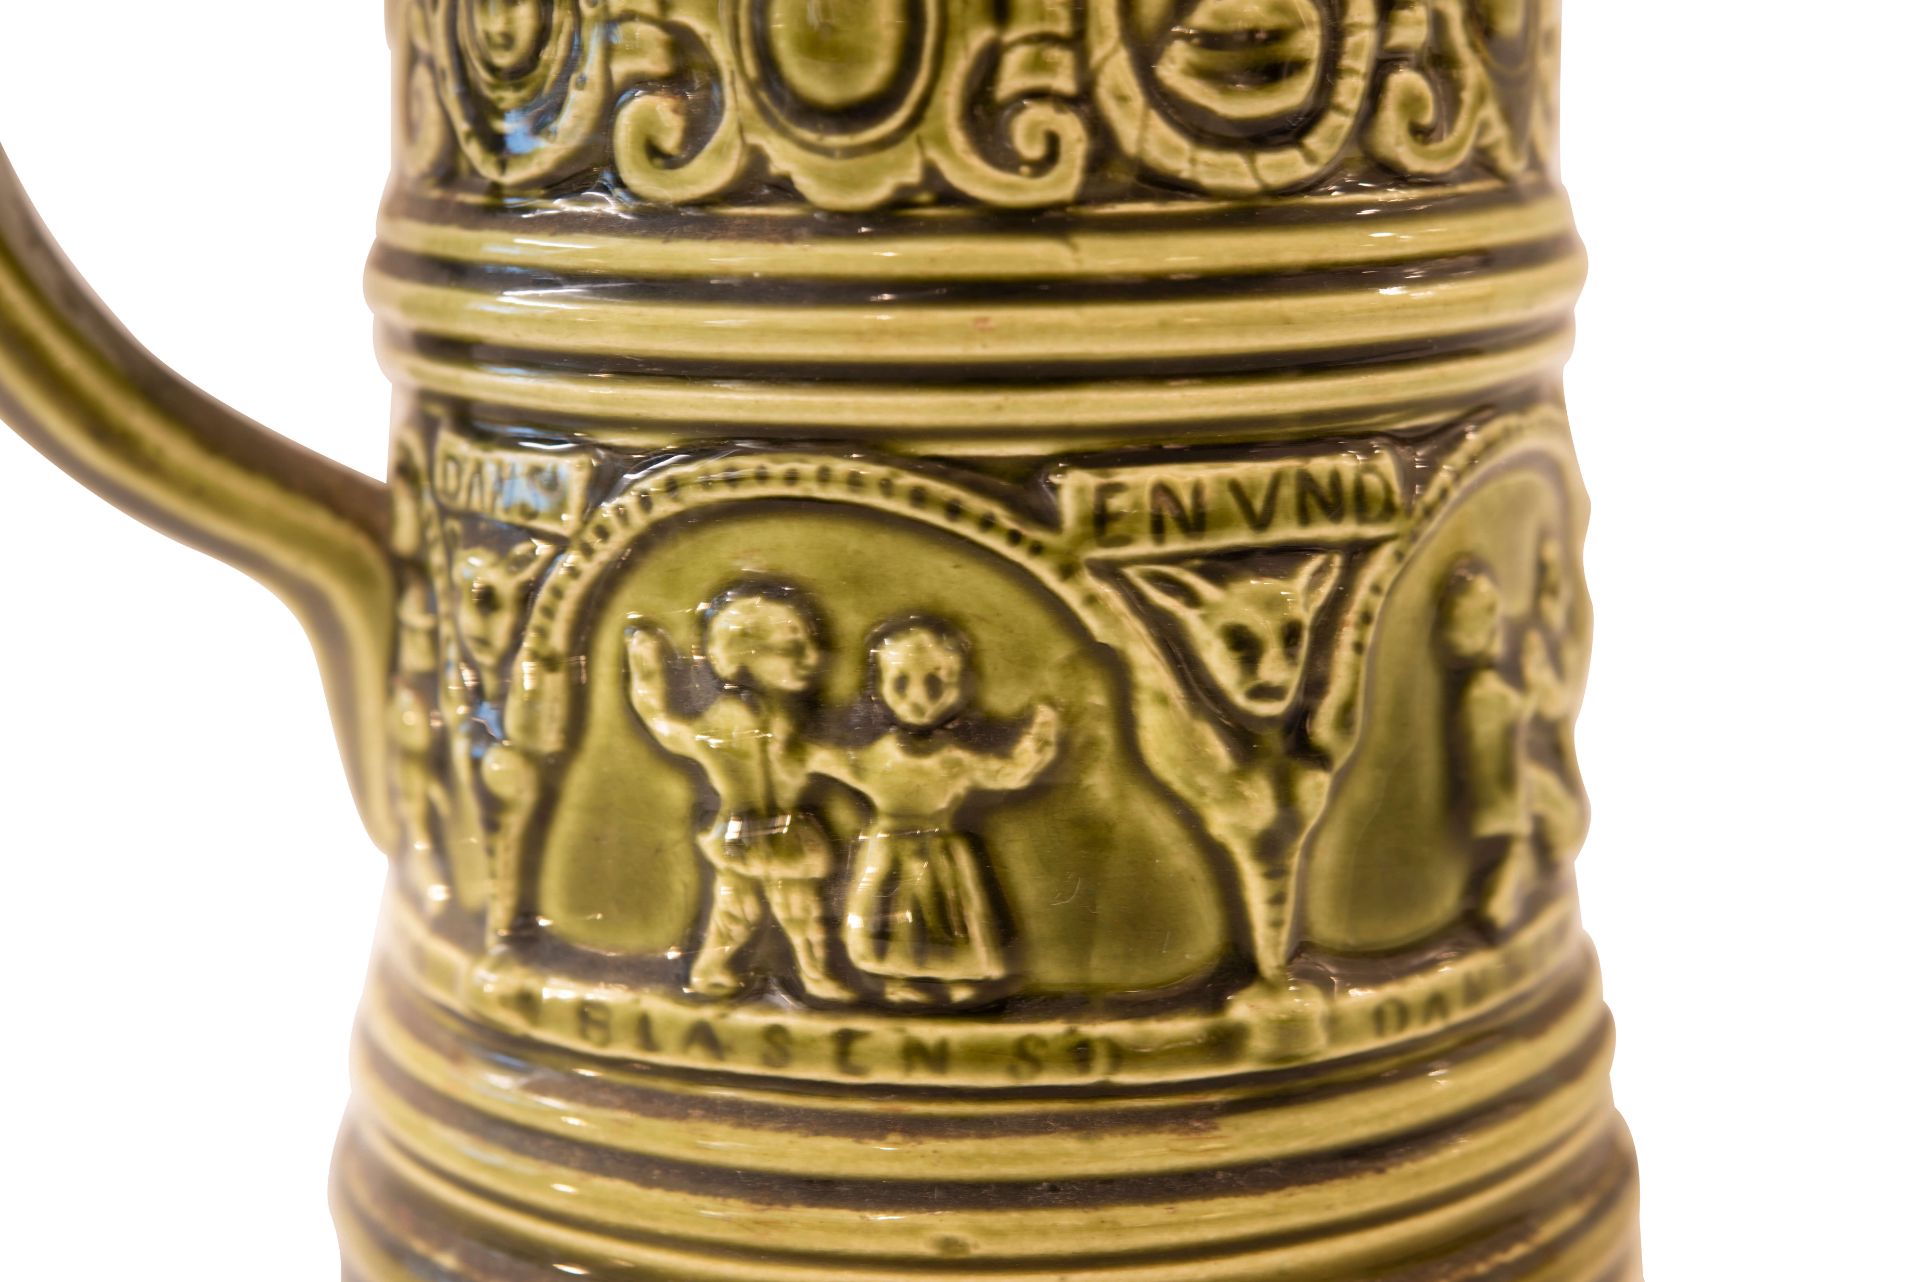 Keramik Bierkrug mit Deckel | Ceramic Beer Mug with Lid - Image 4 of 5